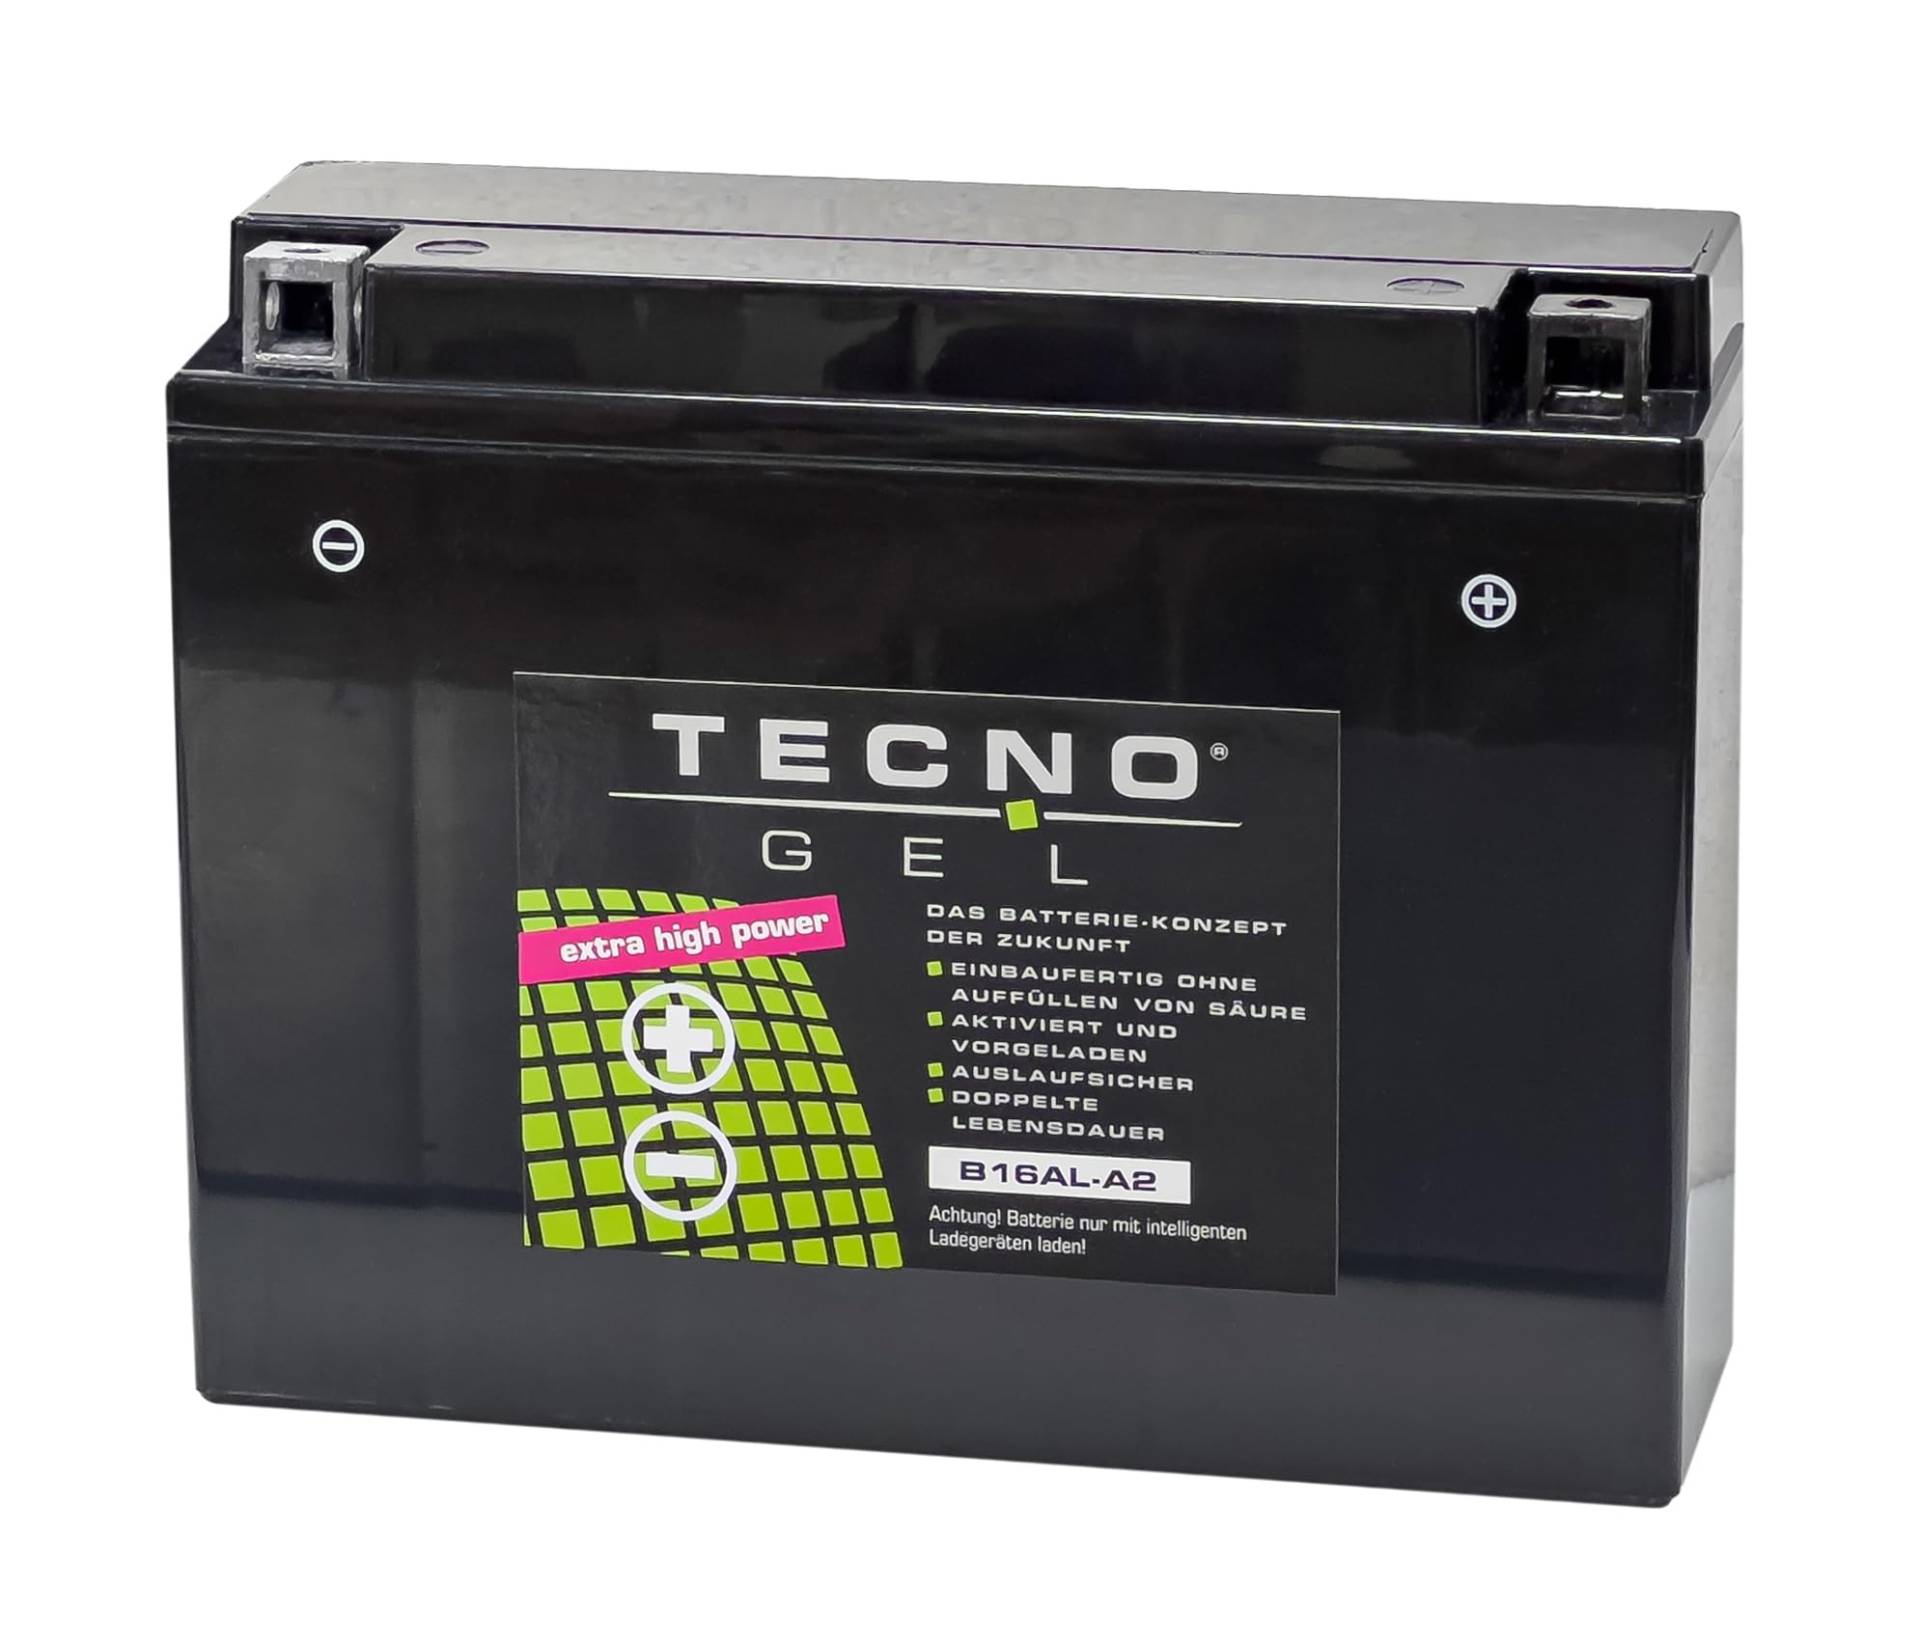 TECNO-GEL Motorrad-Batterie für YB16AL-A2 für DUCATI ST2/ST4 944, 916 1997-2000, 12V Gel-Batterie 16Ah, 205x70x162 mm von Wirth-Federn